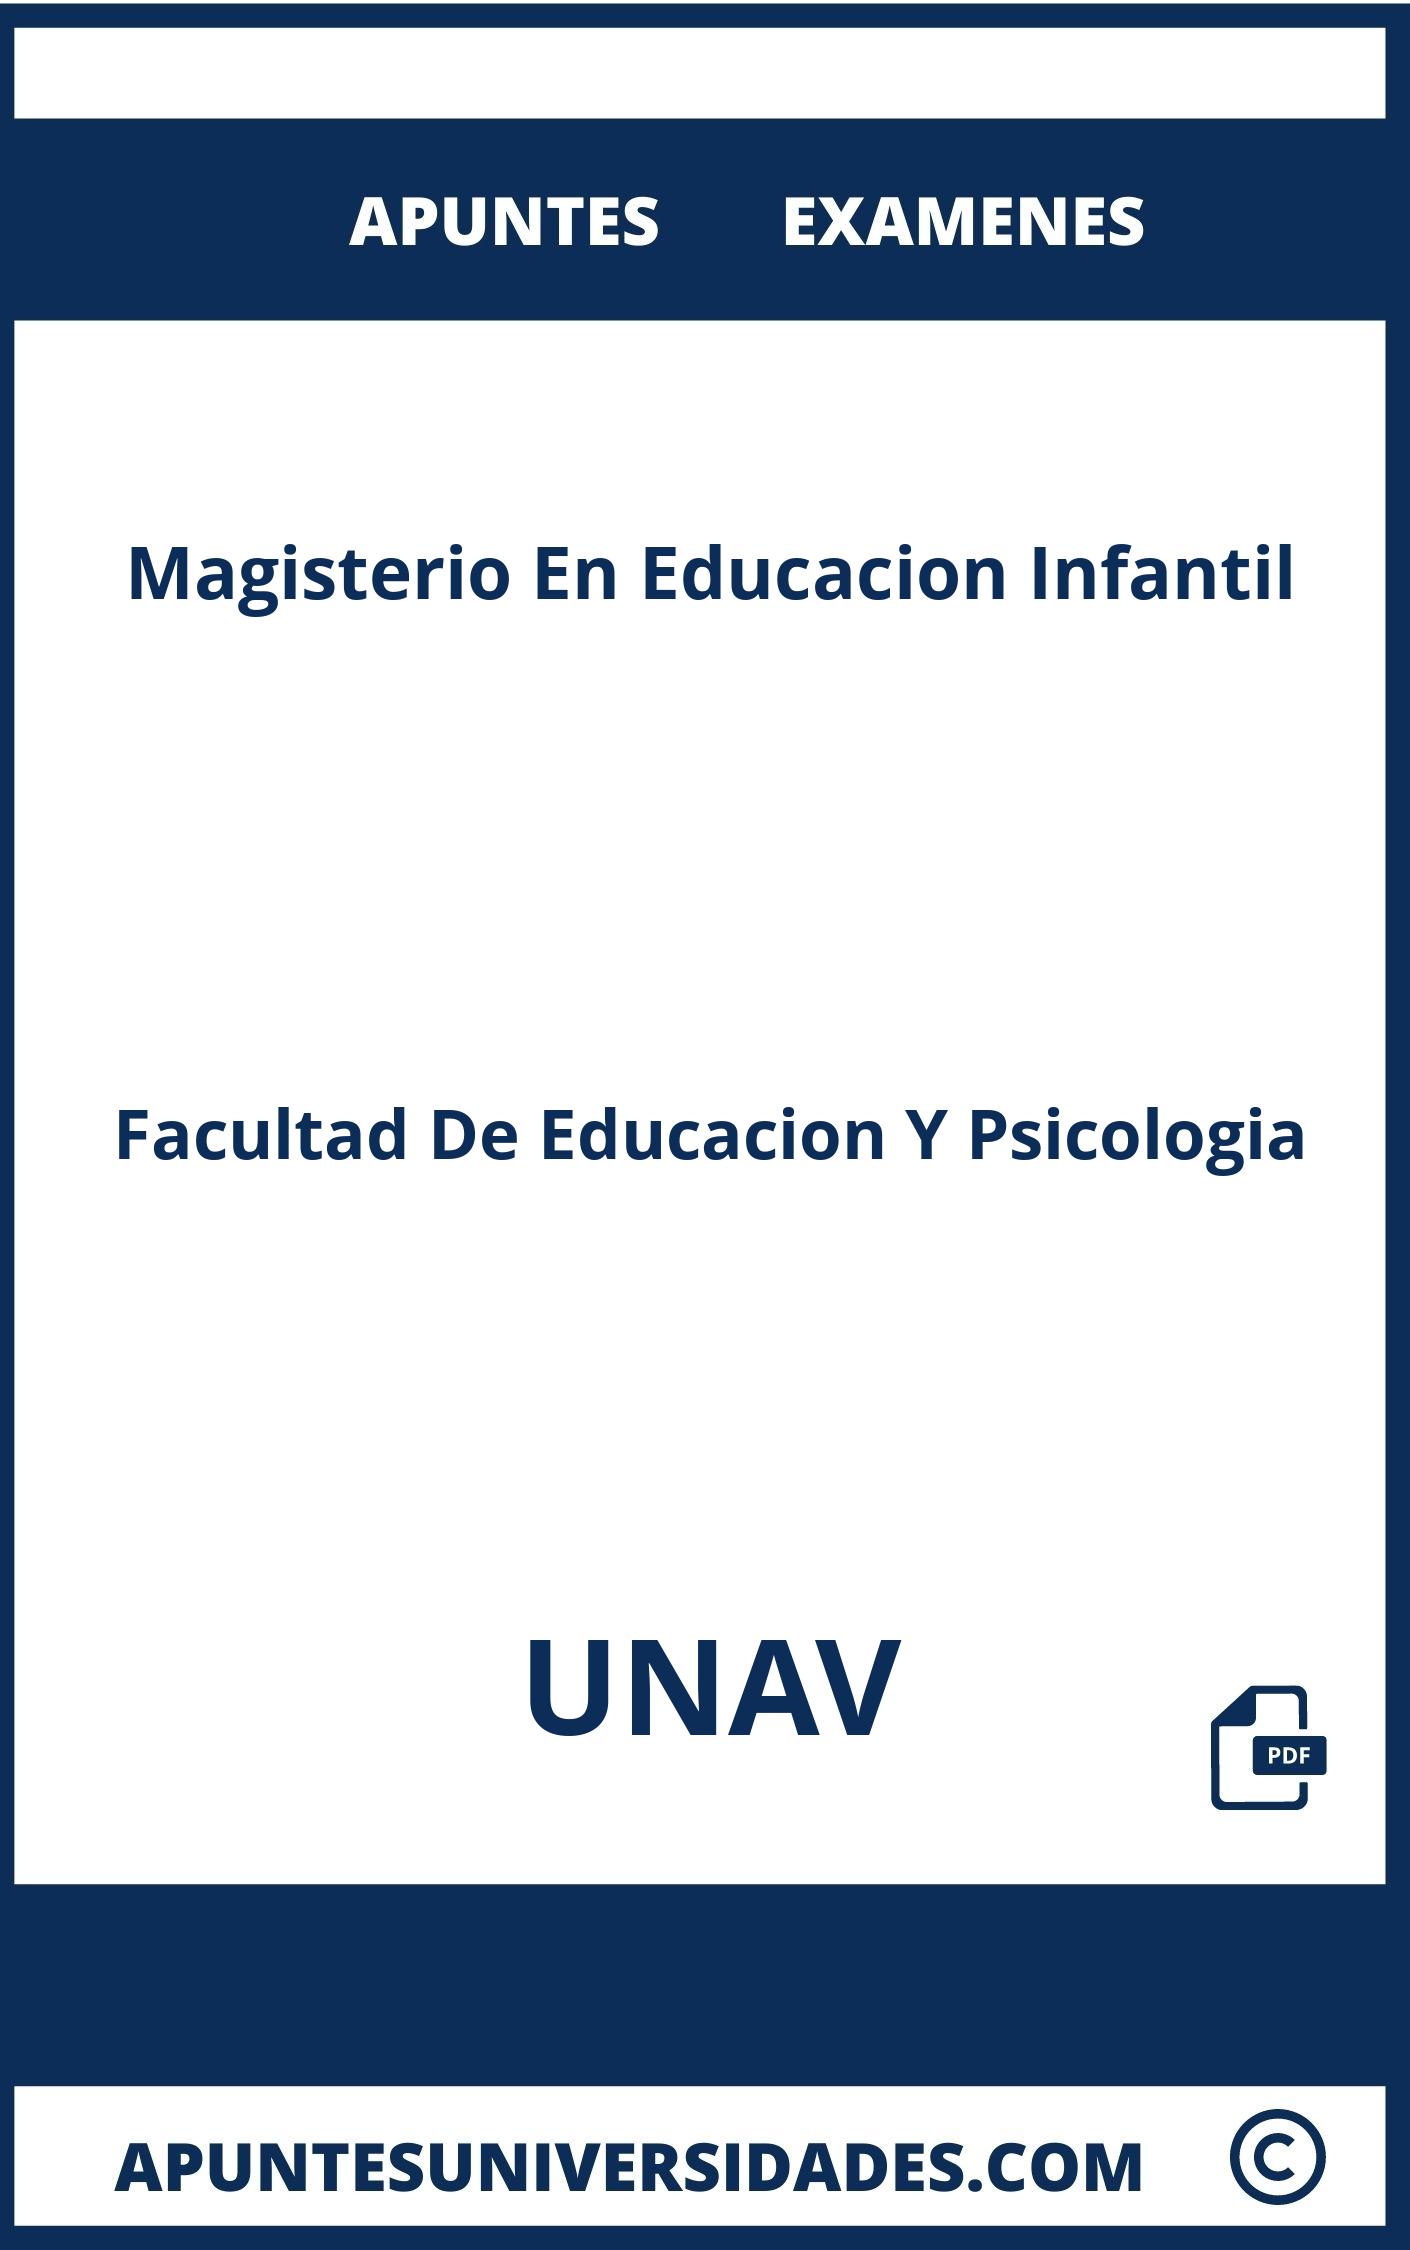 Apuntes y Examenes Magisterio En Educacion Infantil UNAV